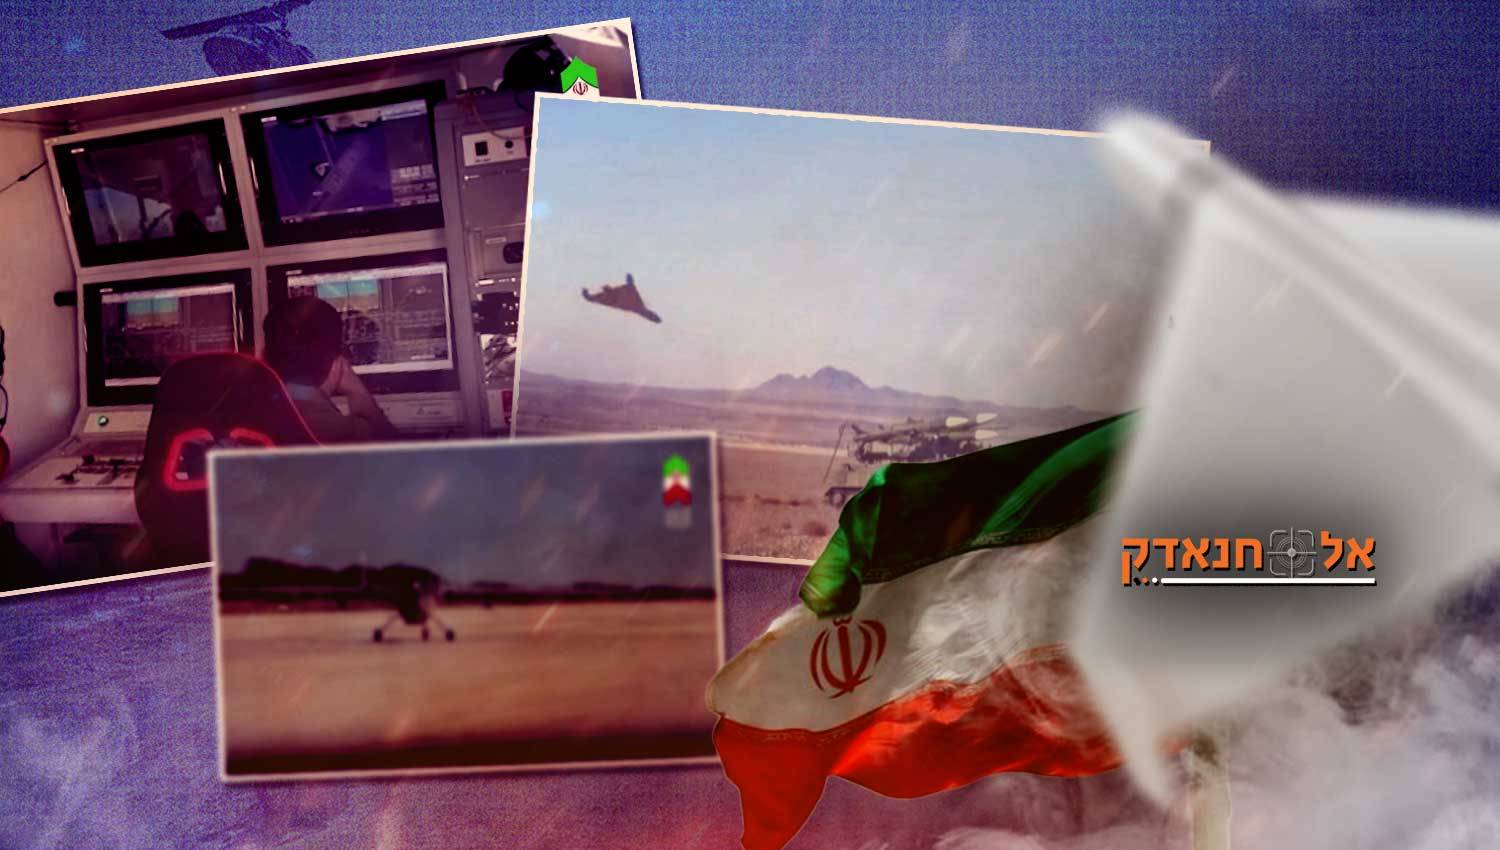 שאהיד-131 ובאבביל 5 נכנסים לשירות בכוח חי"ר האיראני